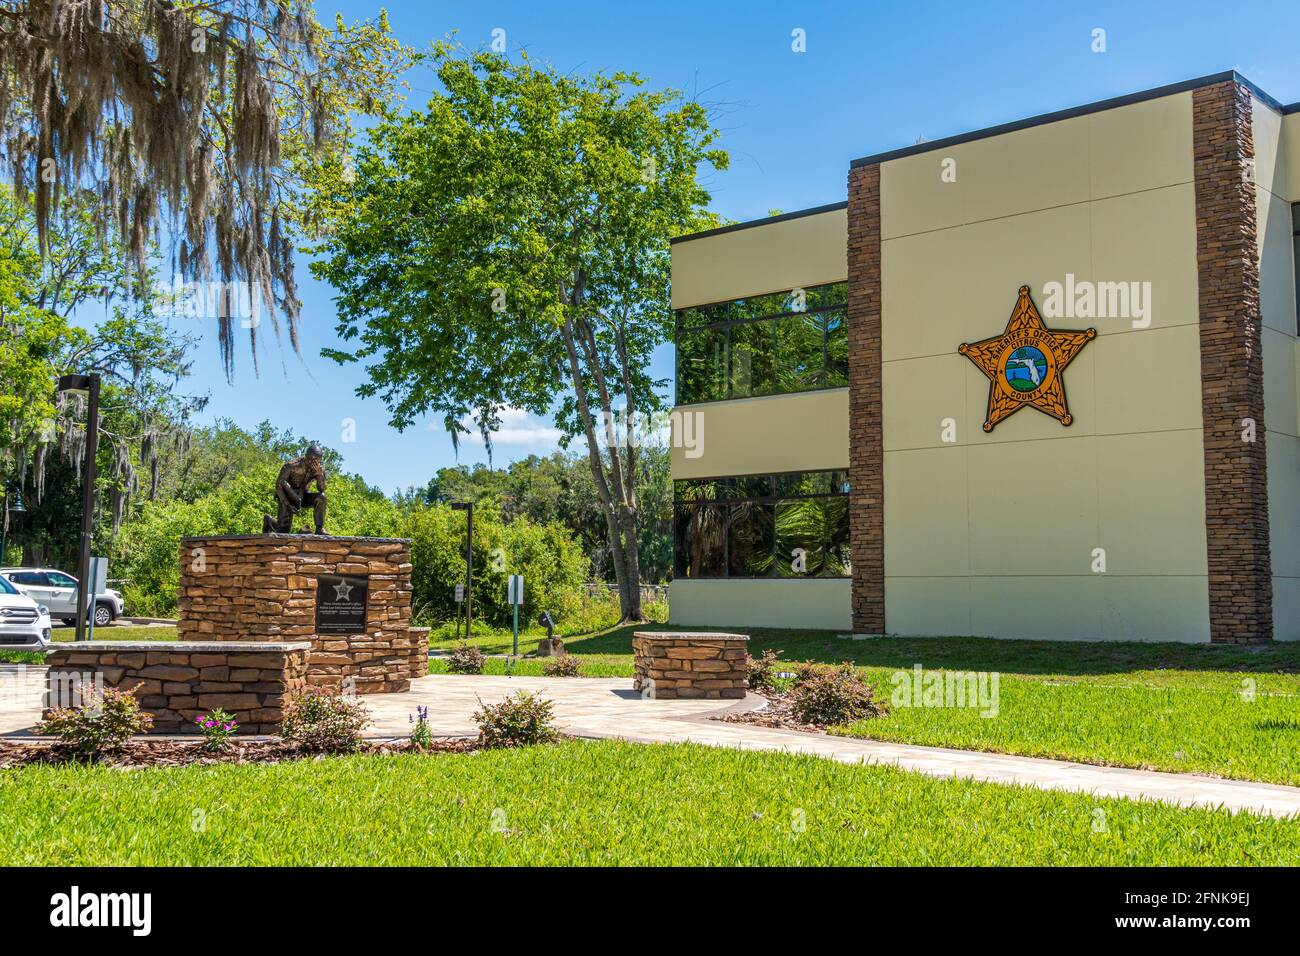 Oficina del Sheriff del Condado de Citrus con Caídos Law Enforcement Memorial - Inverness, Florida, Estados Unidos Foto de stock